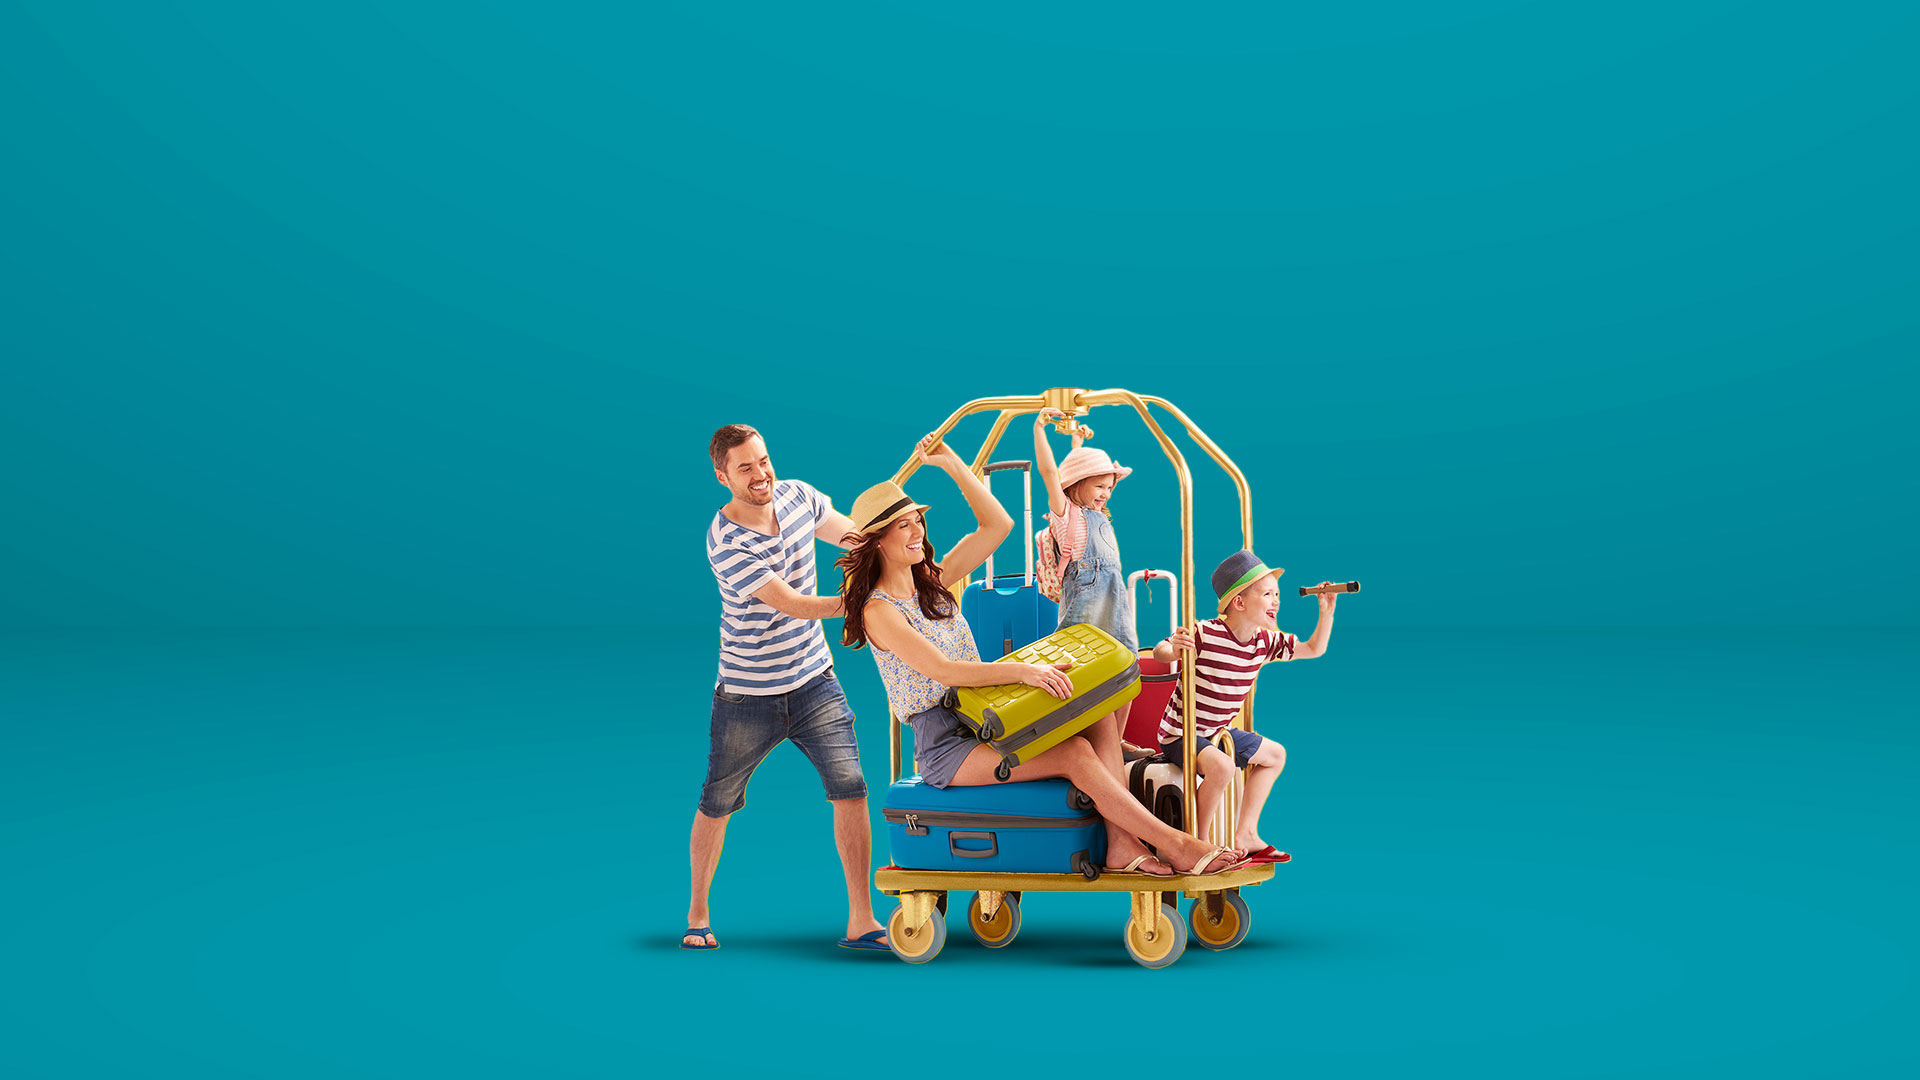  Famiglia allegra gioca su carrello per trasportare valigie